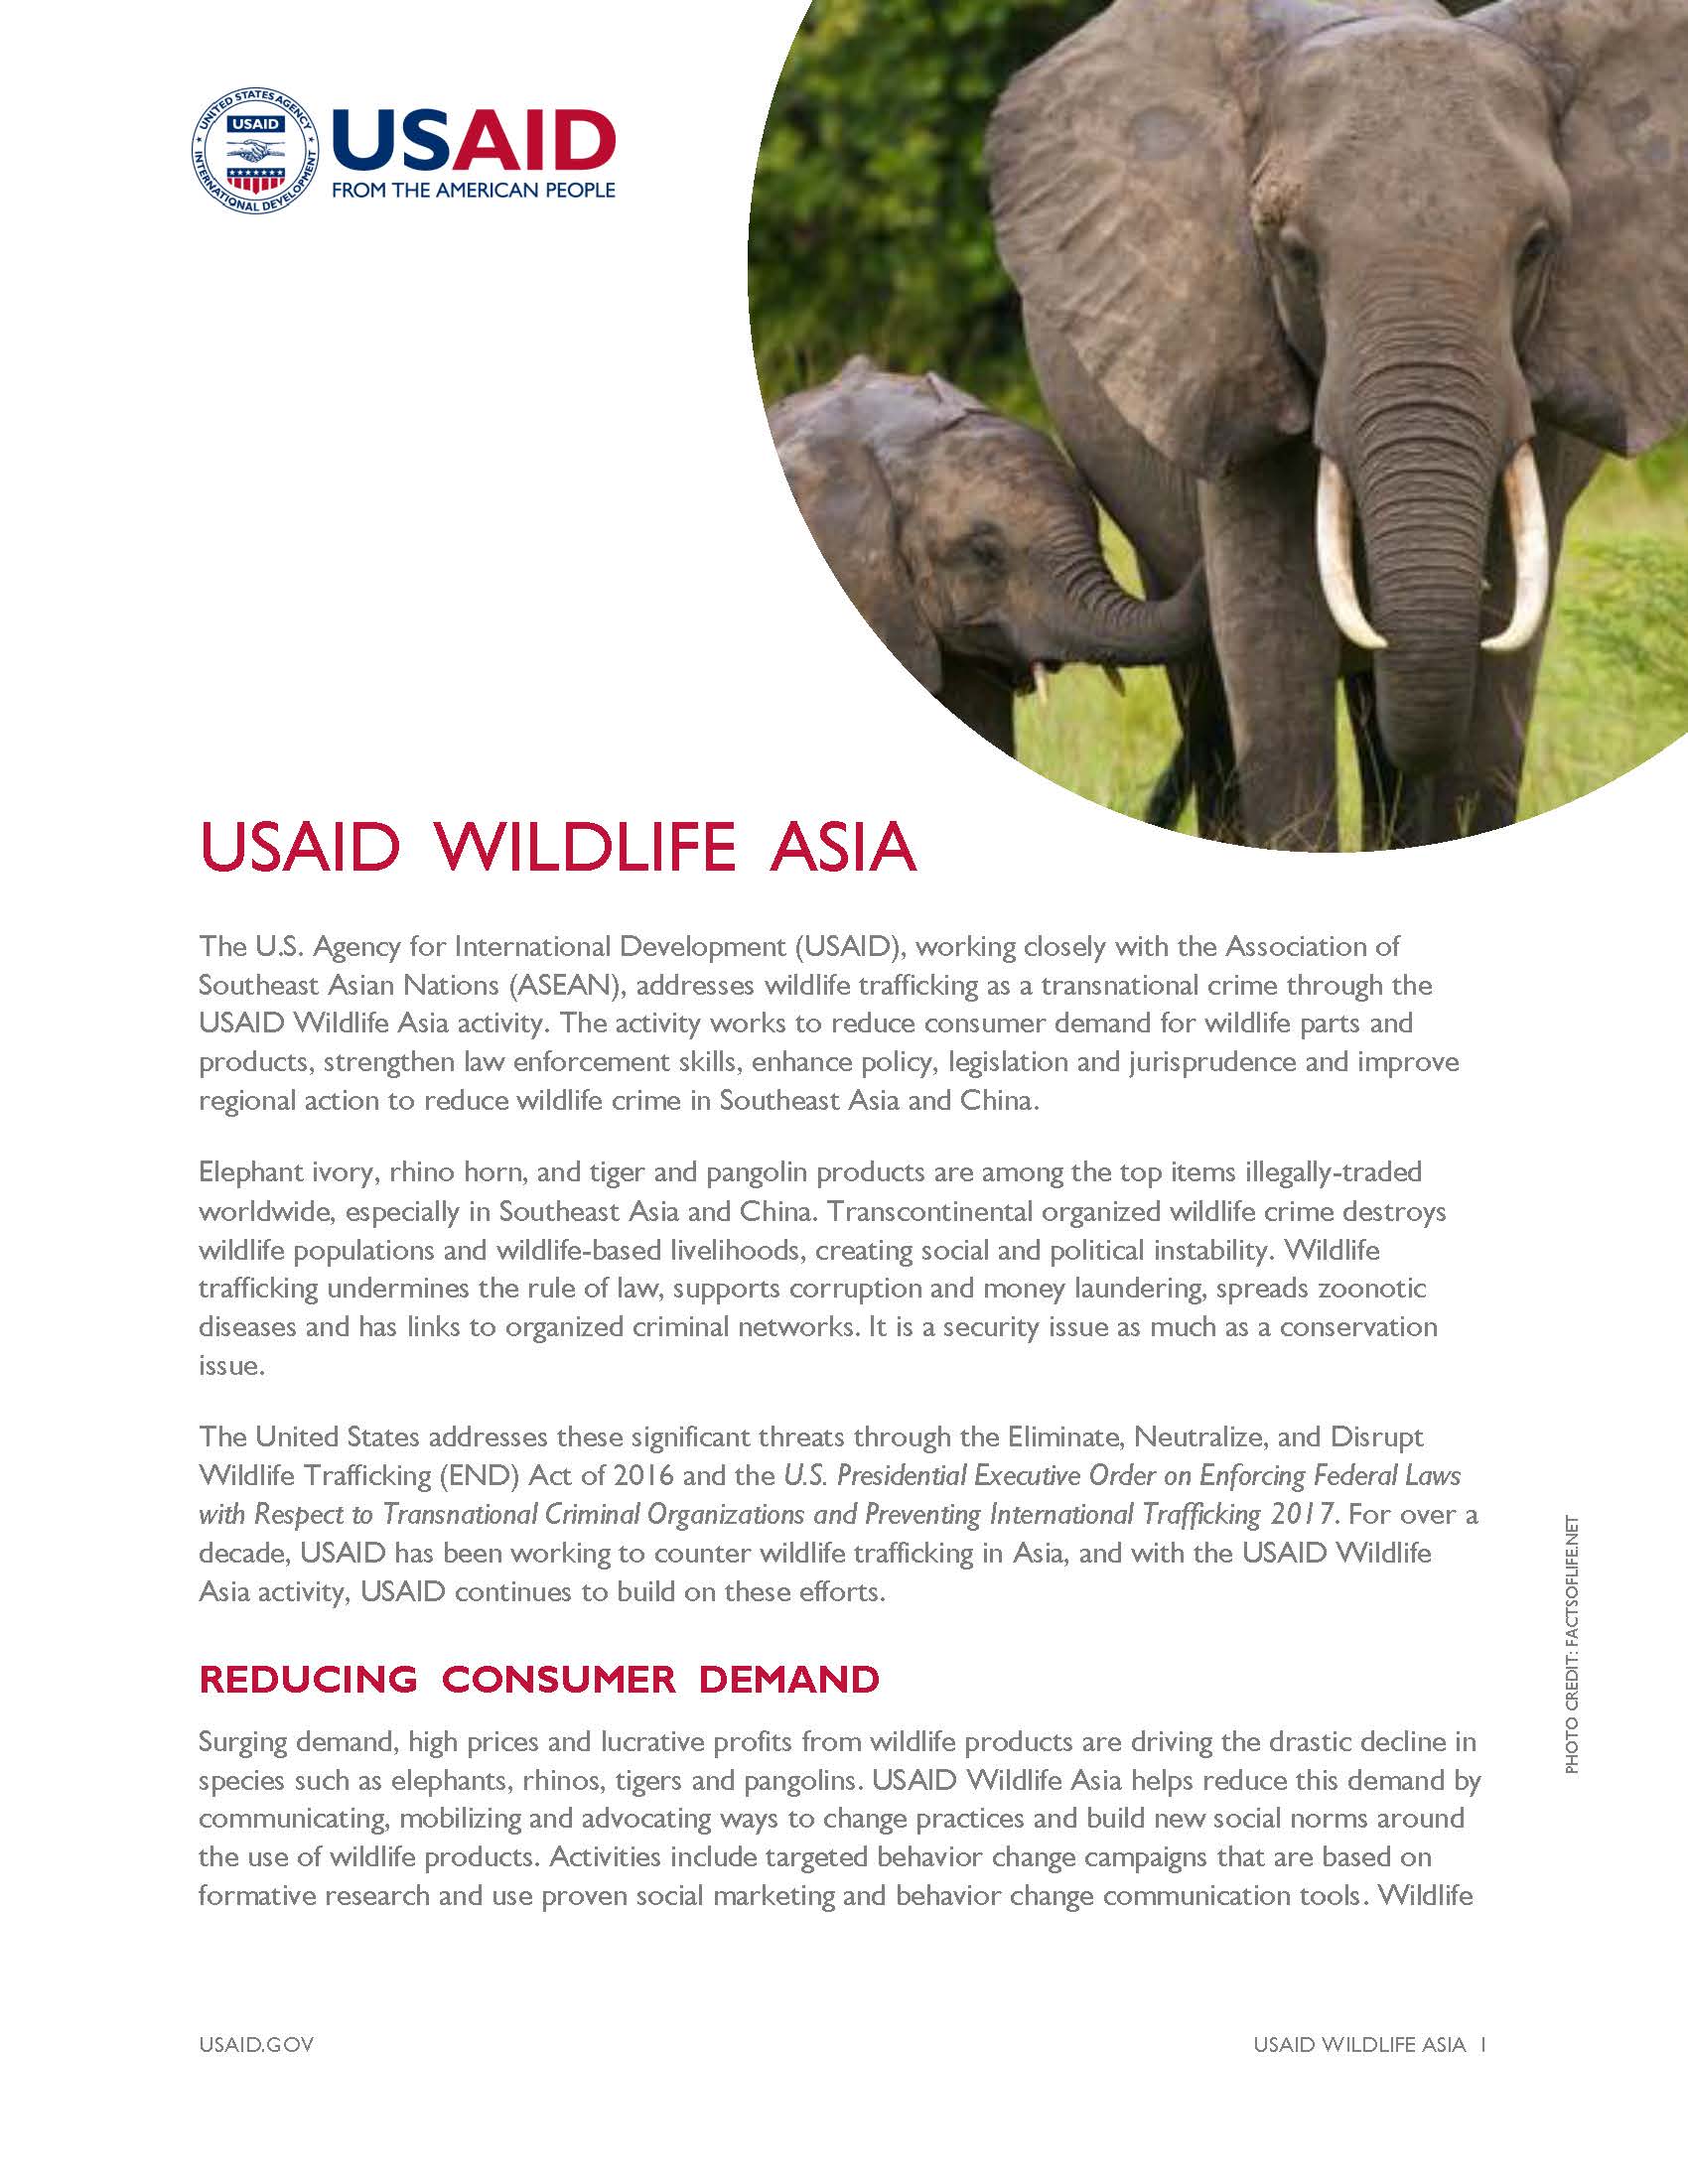 USAID Wildlife Asia - June 2017